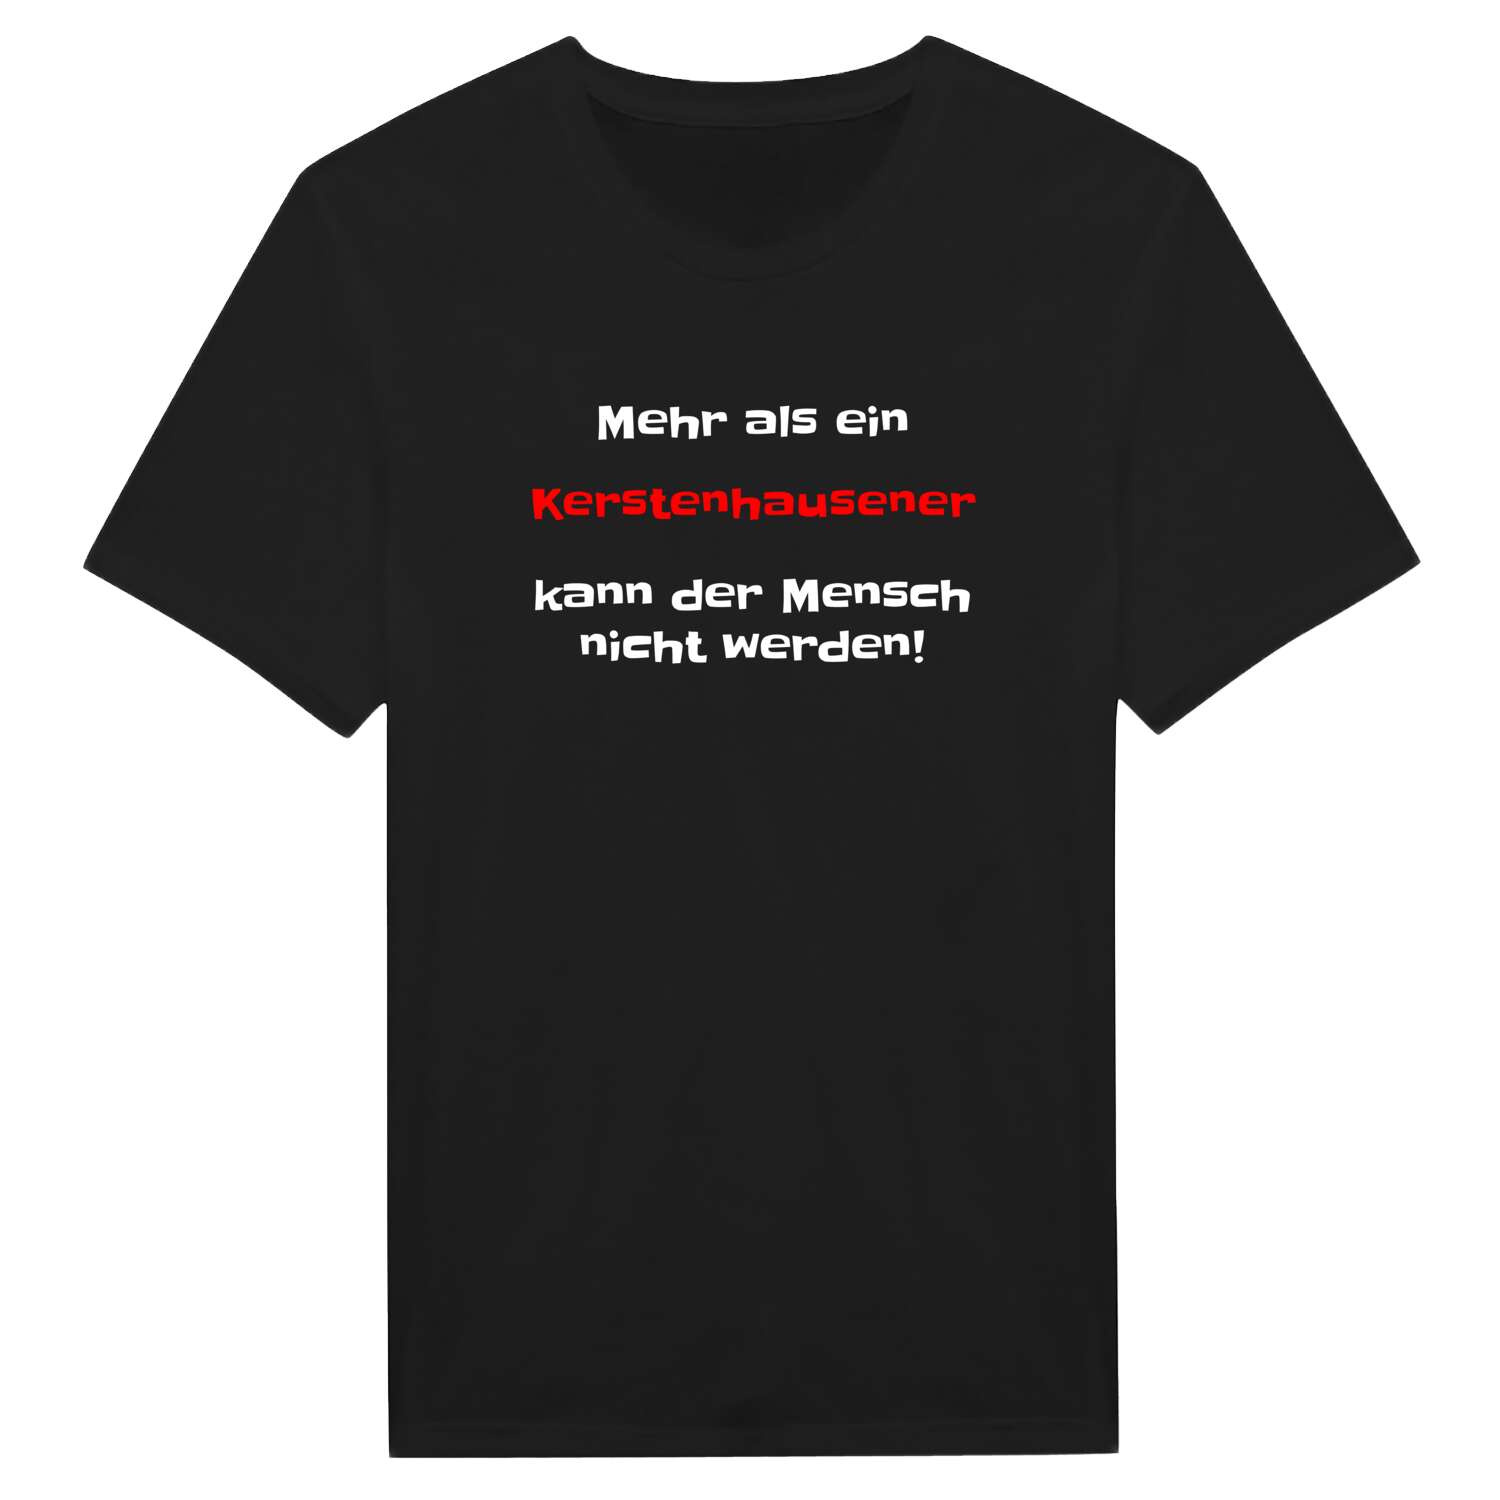 Kerstenhausen T-Shirt »Mehr als ein«